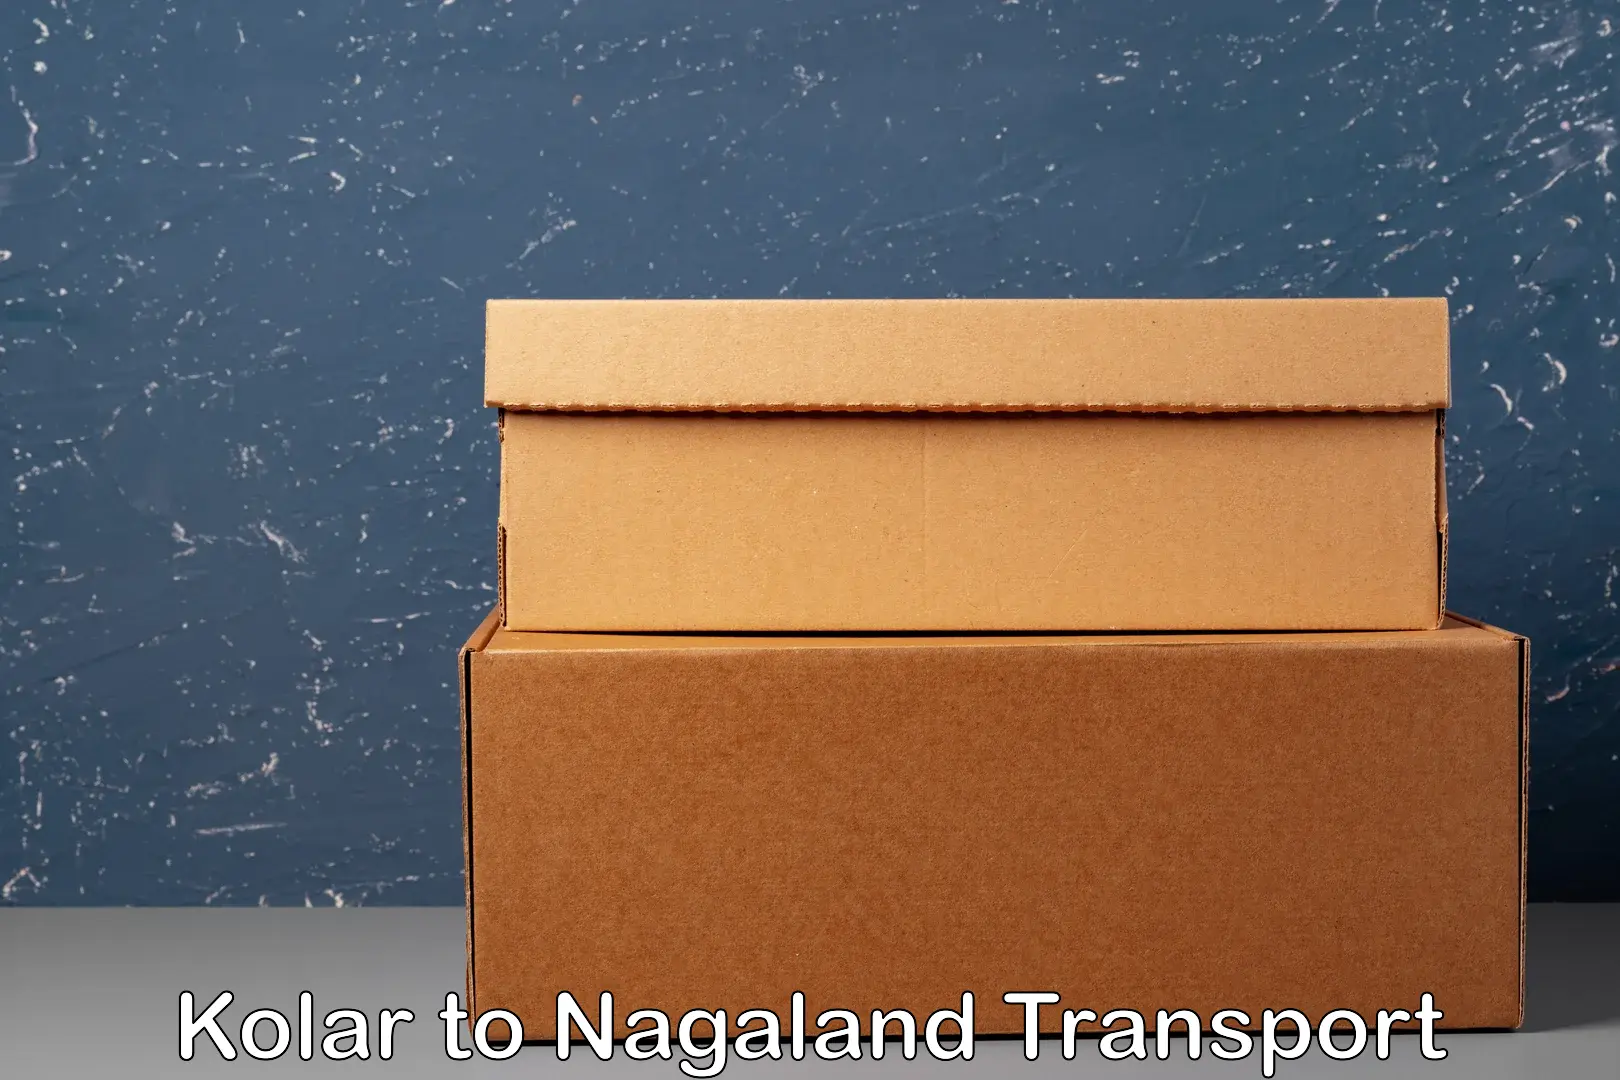 Bike shipping service Kolar to Nagaland